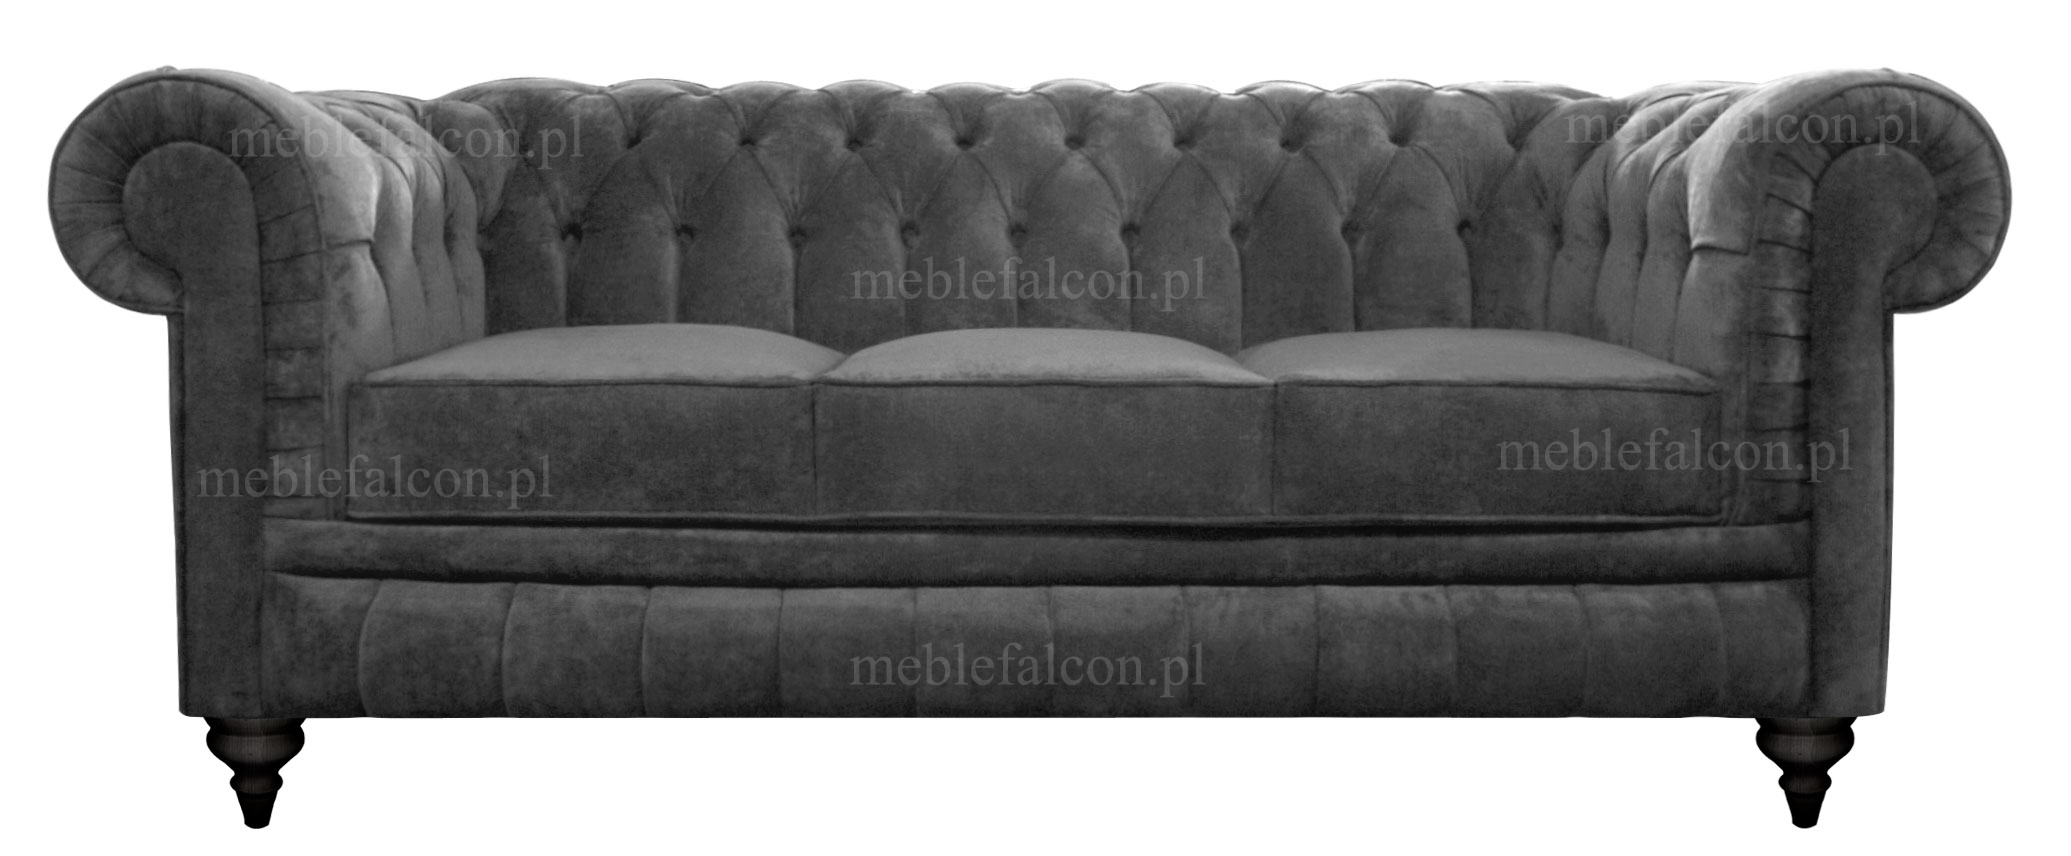 szlachetna sofa pluszowa w stylu chesterfield z głeboko pikowanym oparciem stylowa sofa pikowana